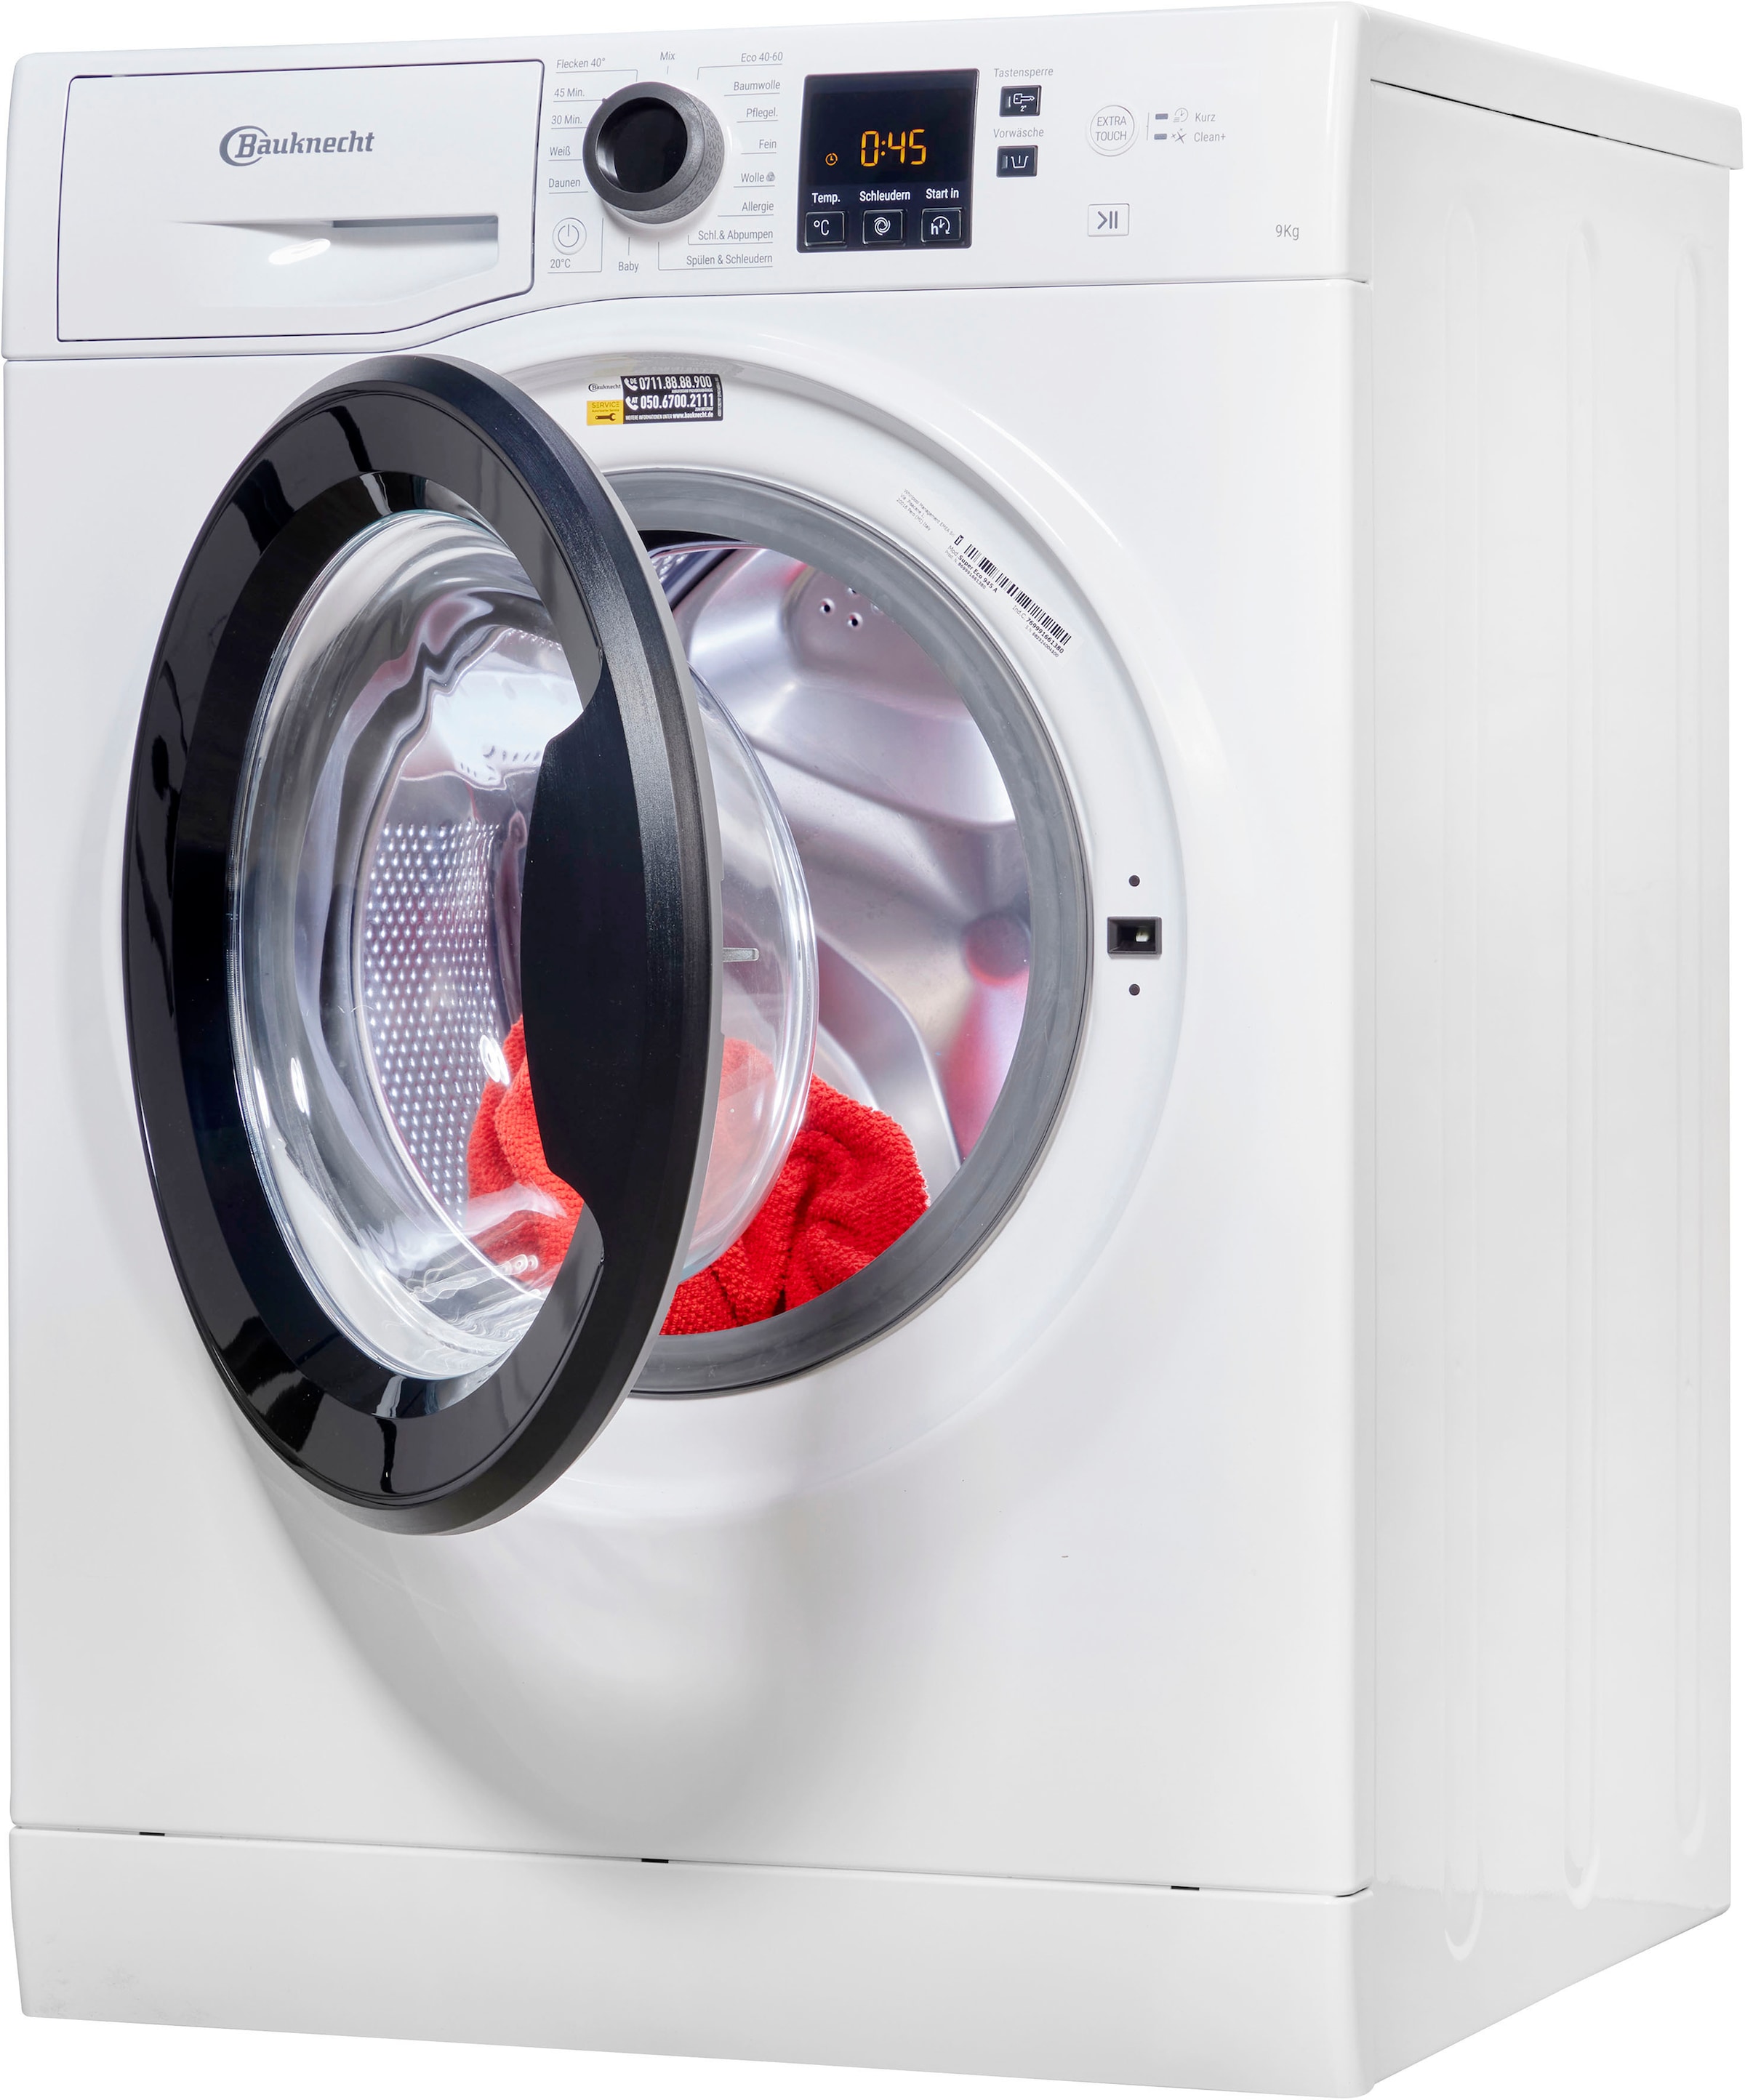 Jahre Waschmaschine, mit kg, Jahren A, XXL Super 9 3 Garantie 1400 BAUKNECHT 945 Eco 4 Herstellergarantie U/min,